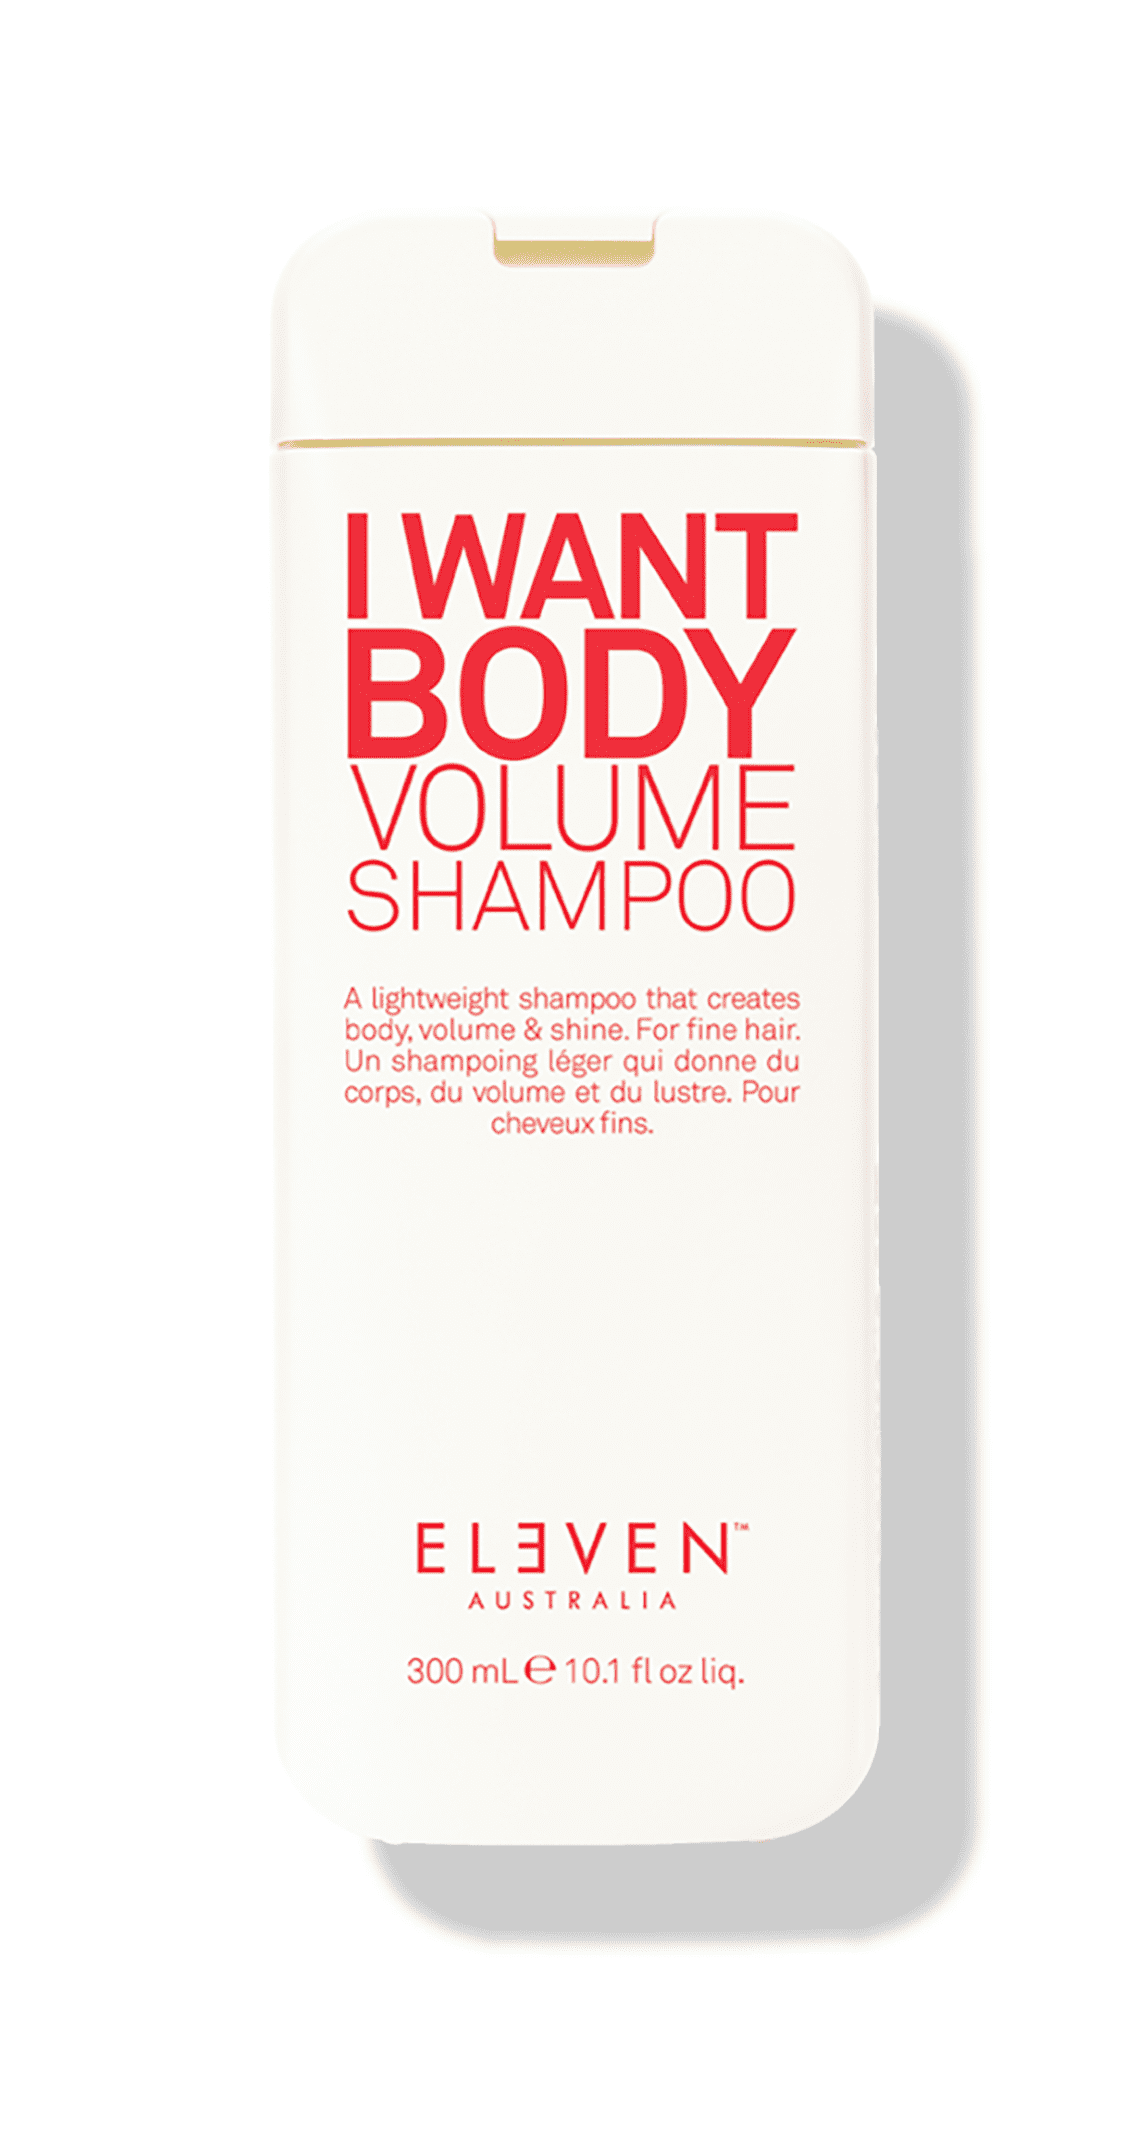 I Want Body Volume Shampoo - 300ml - ELEVEN Australia